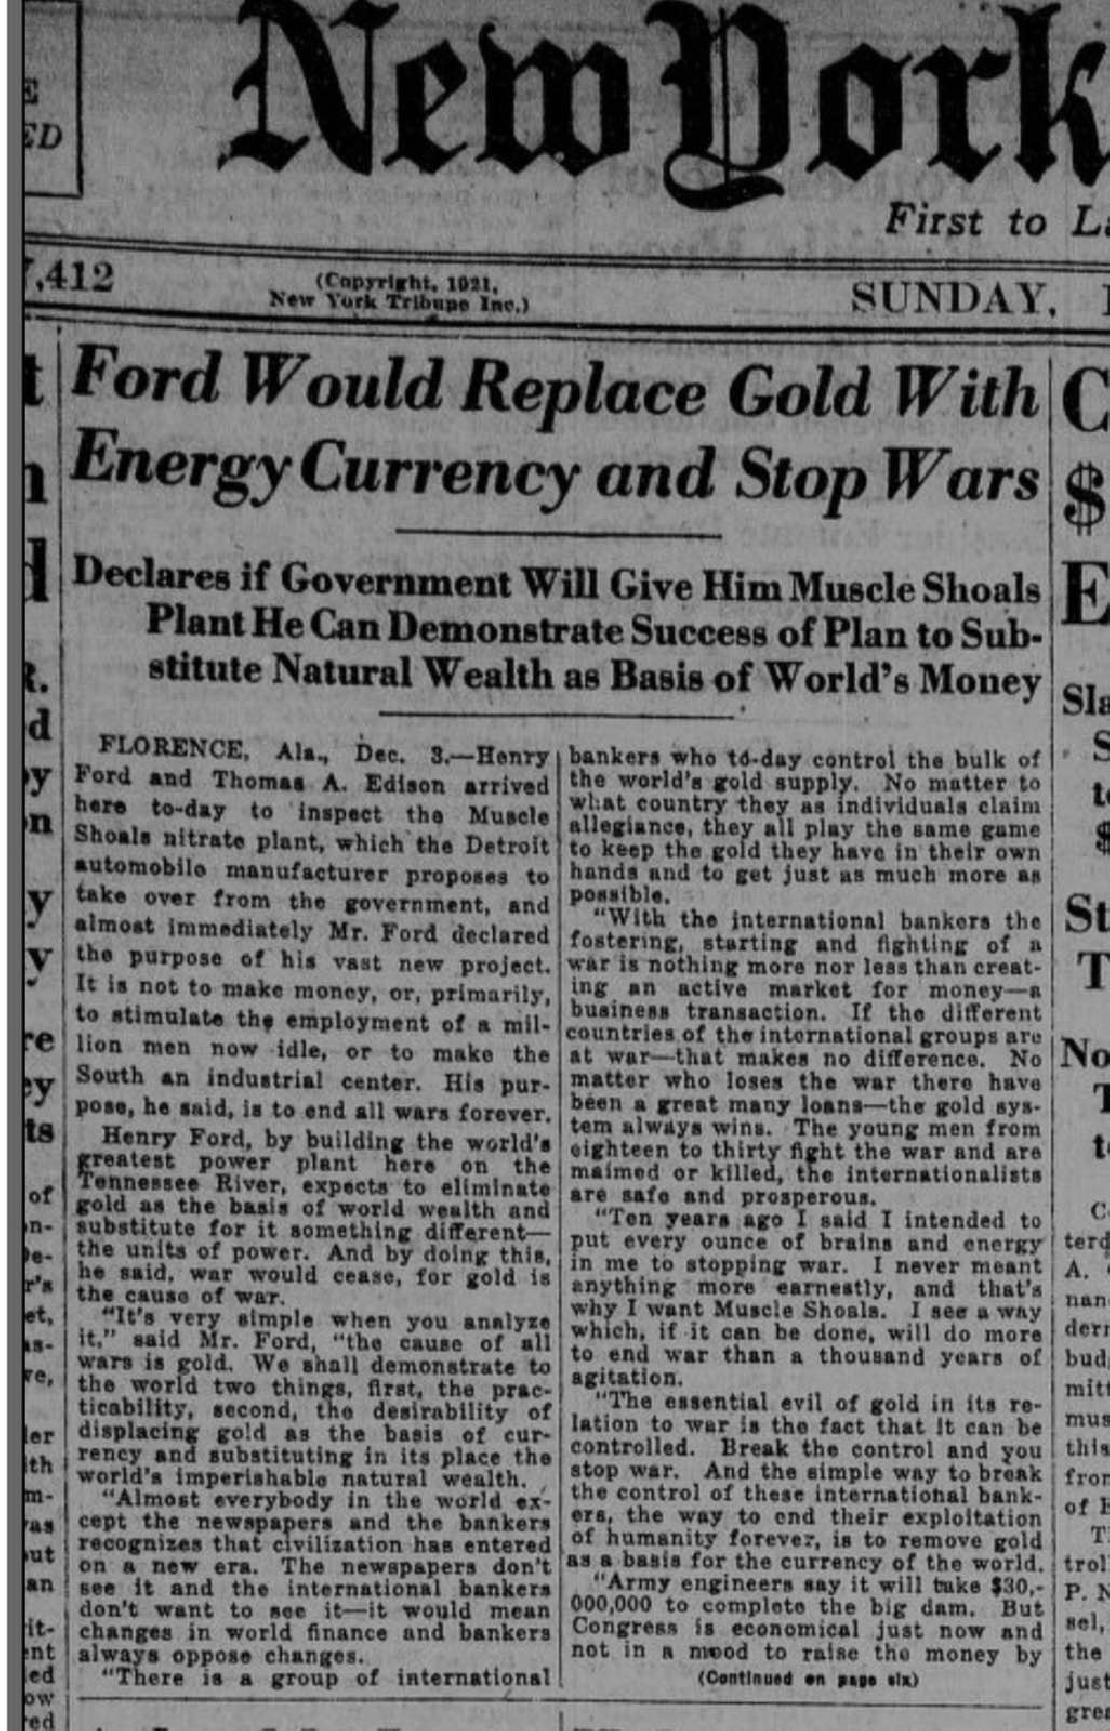 New York tribute 1921-ben íródott cikk részlete. A cikk témája az, hogy Ford energia valutával helyettesítené az aranyat. 